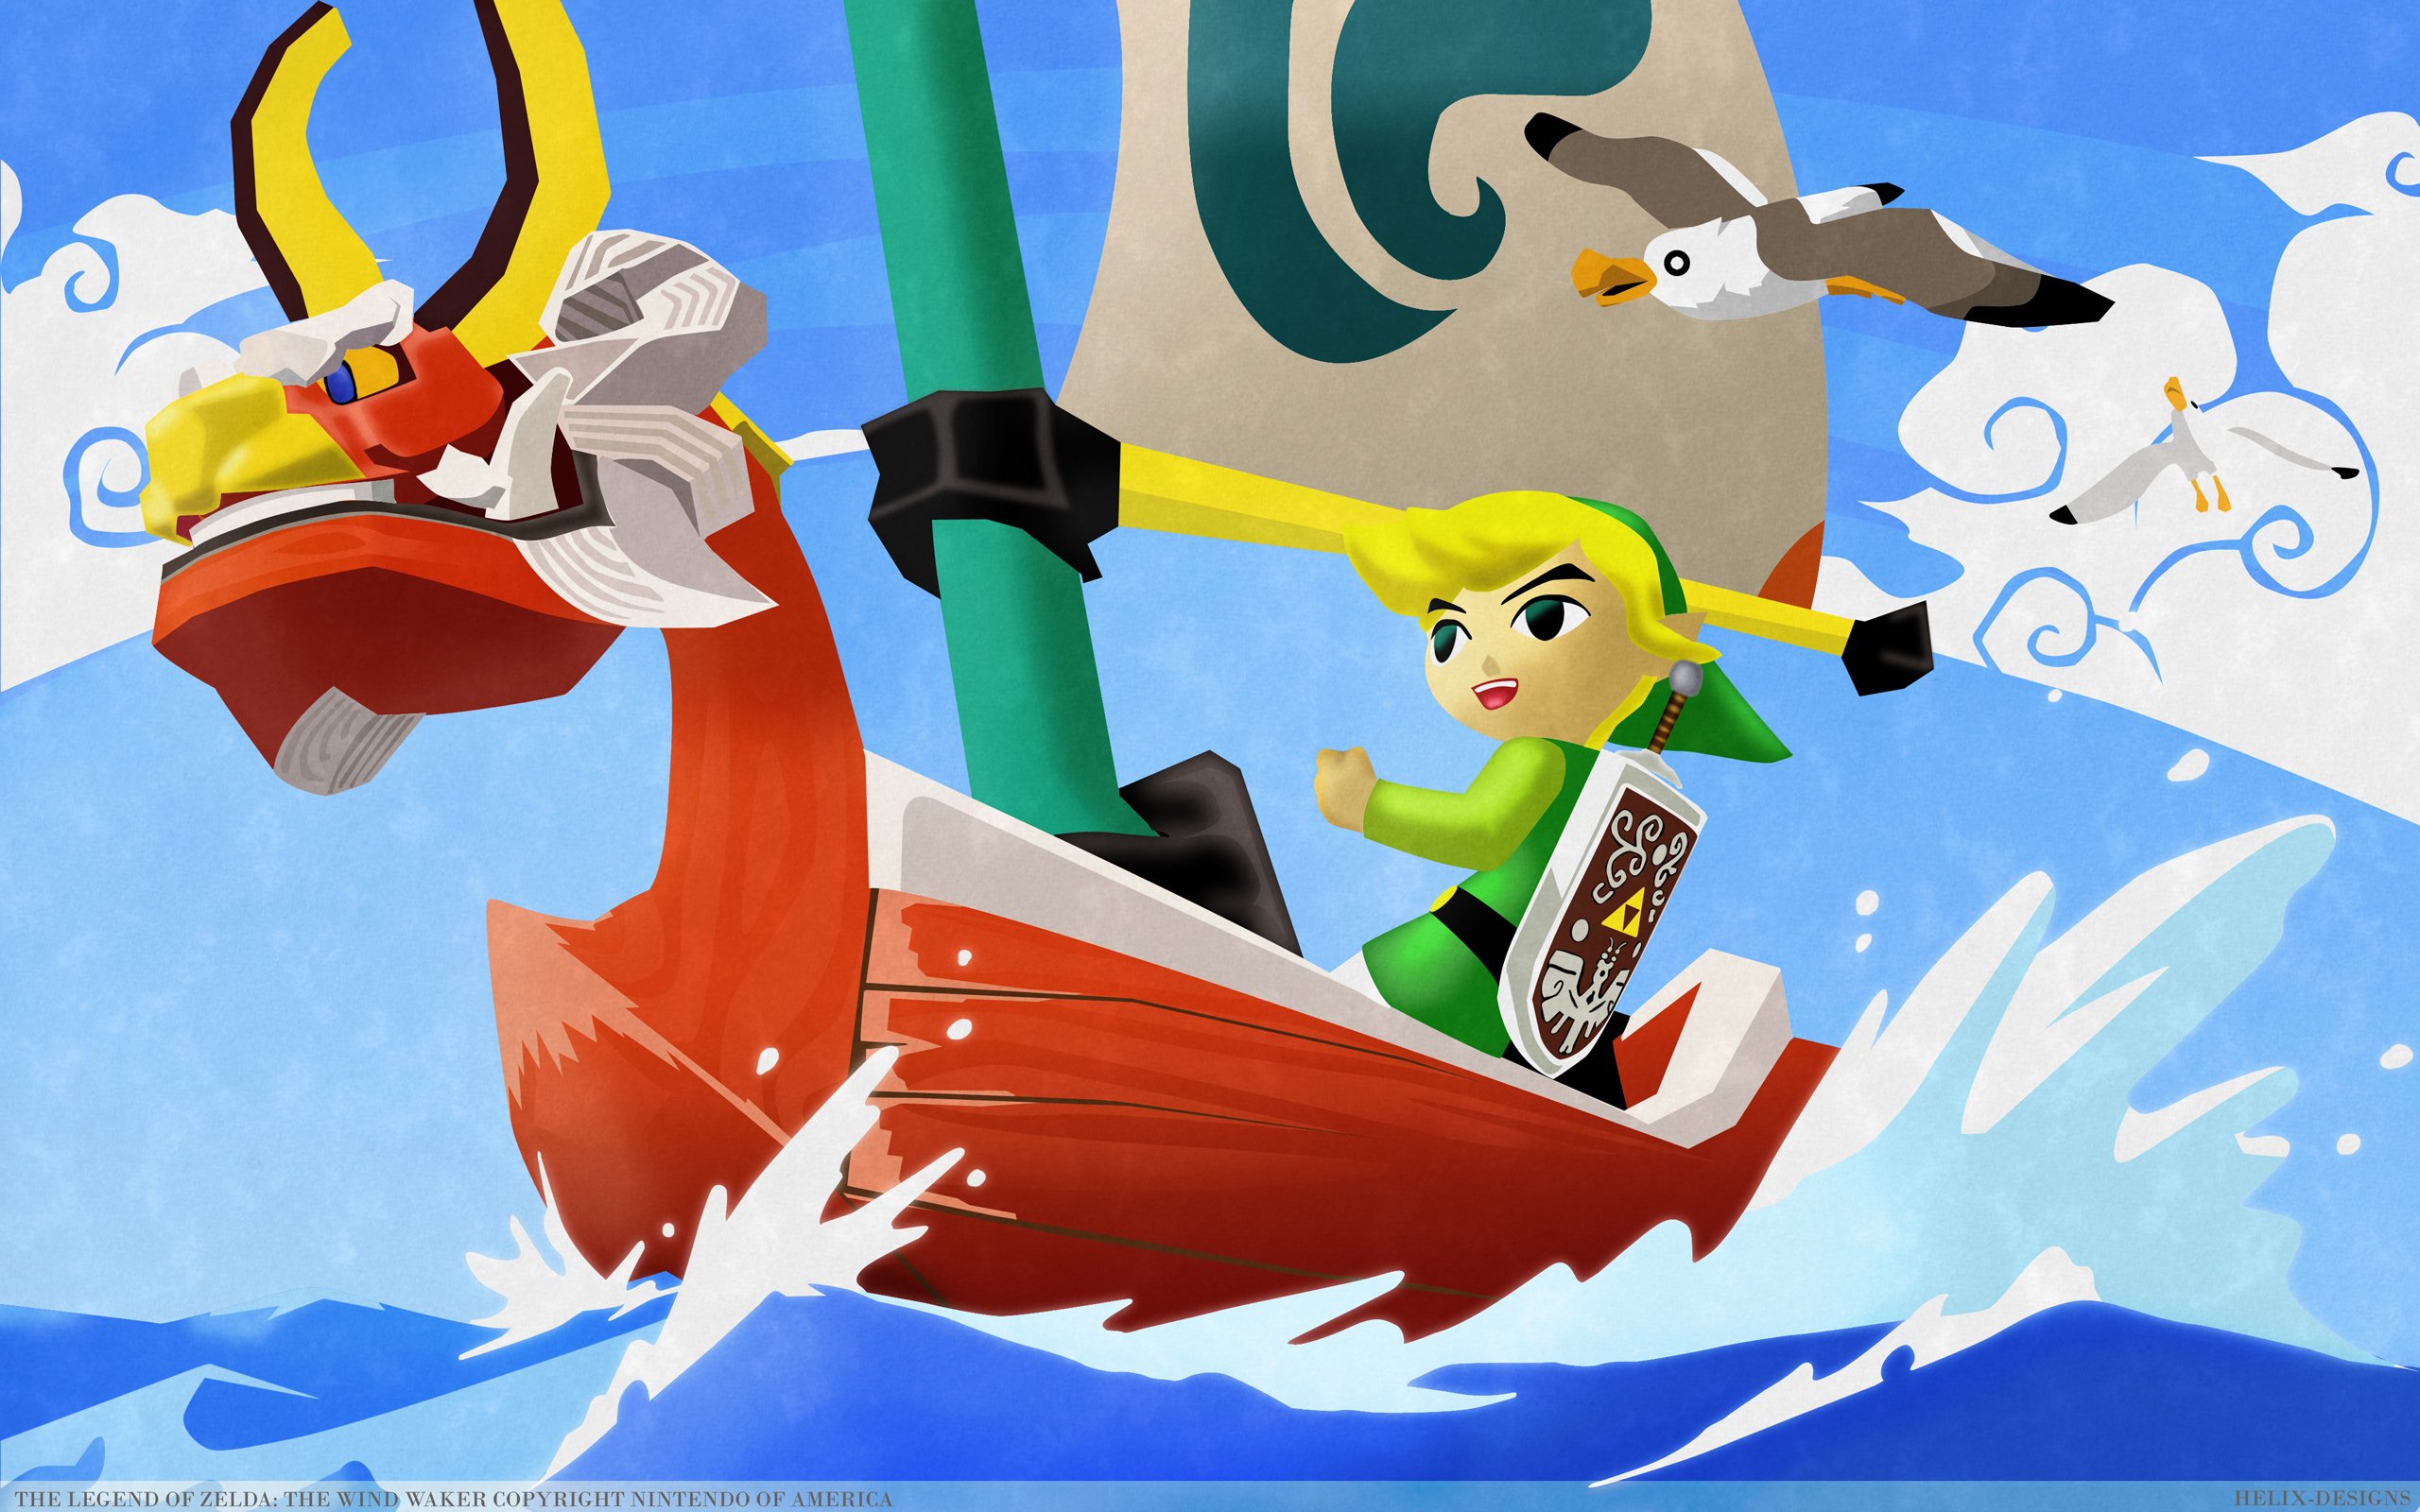 Legend Zelda Windwaker Action Adventure Family Nintendo Wallpapers Hd Desktop And Mobile Backgrounds